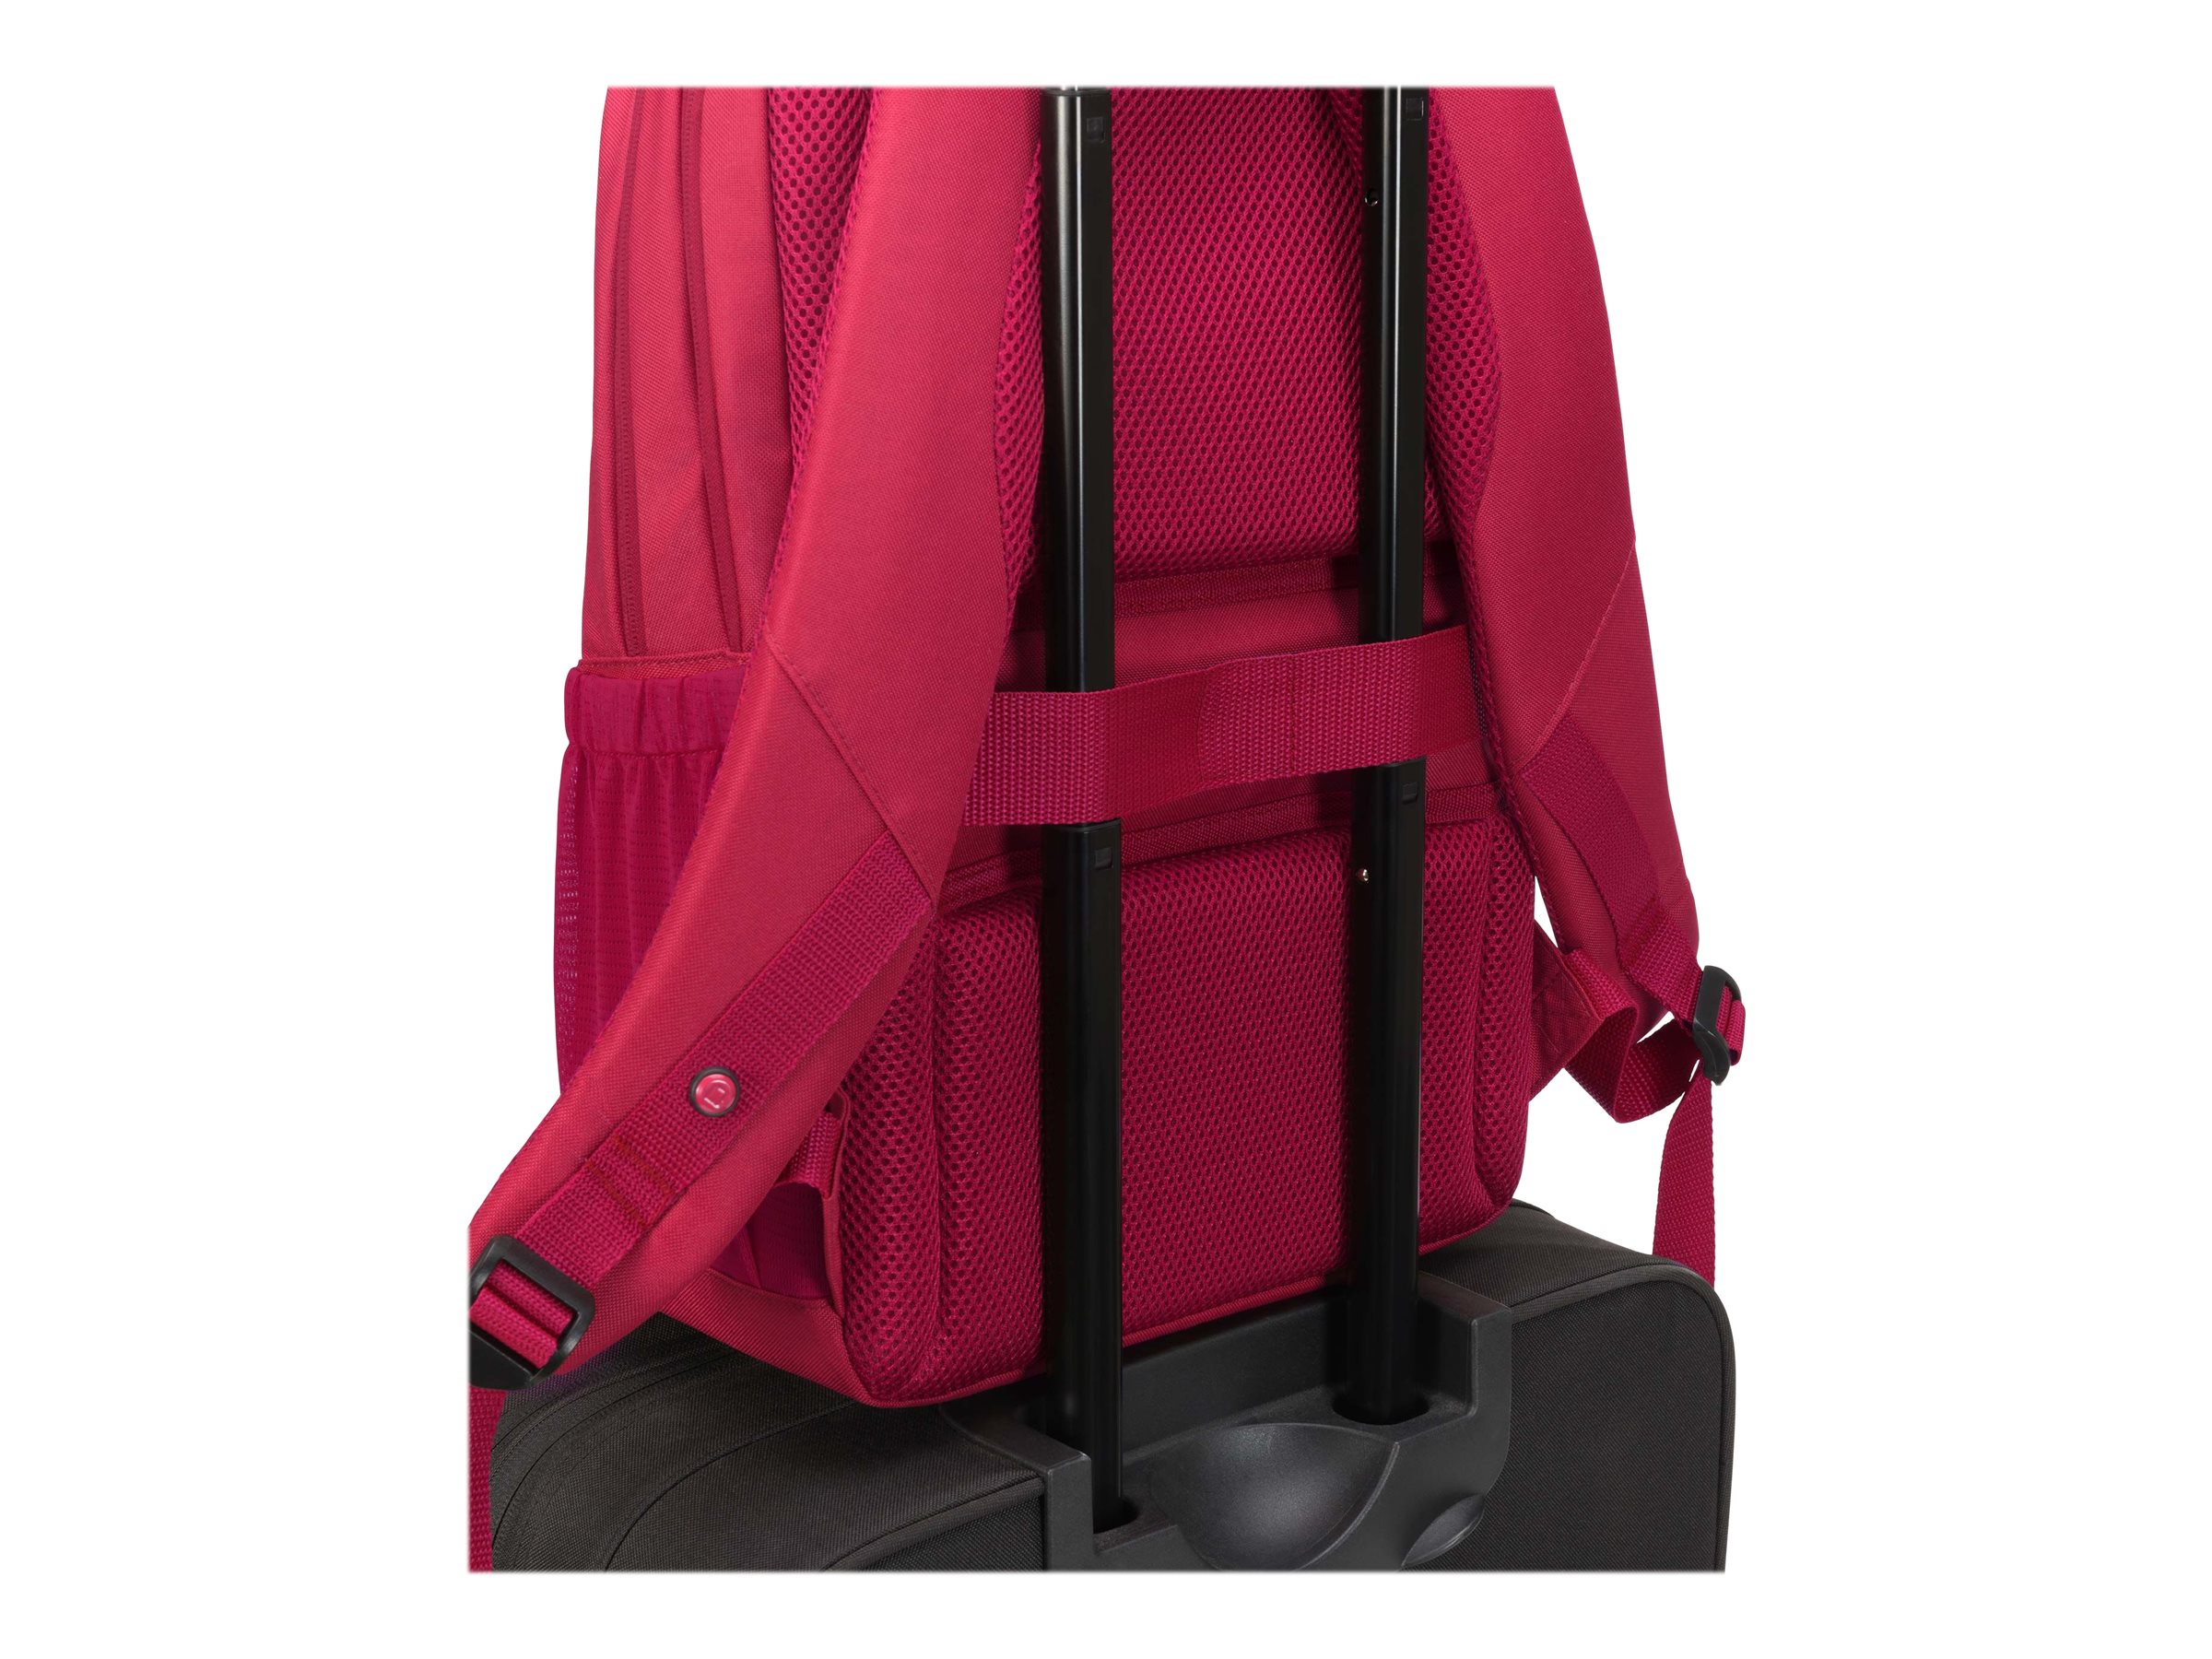 DICOTA Eco Backpack Scale - Sac à dos pour ordinateur portable - 13" - 15.6" - rouge - D31734 - Sacoches pour ordinateur portable